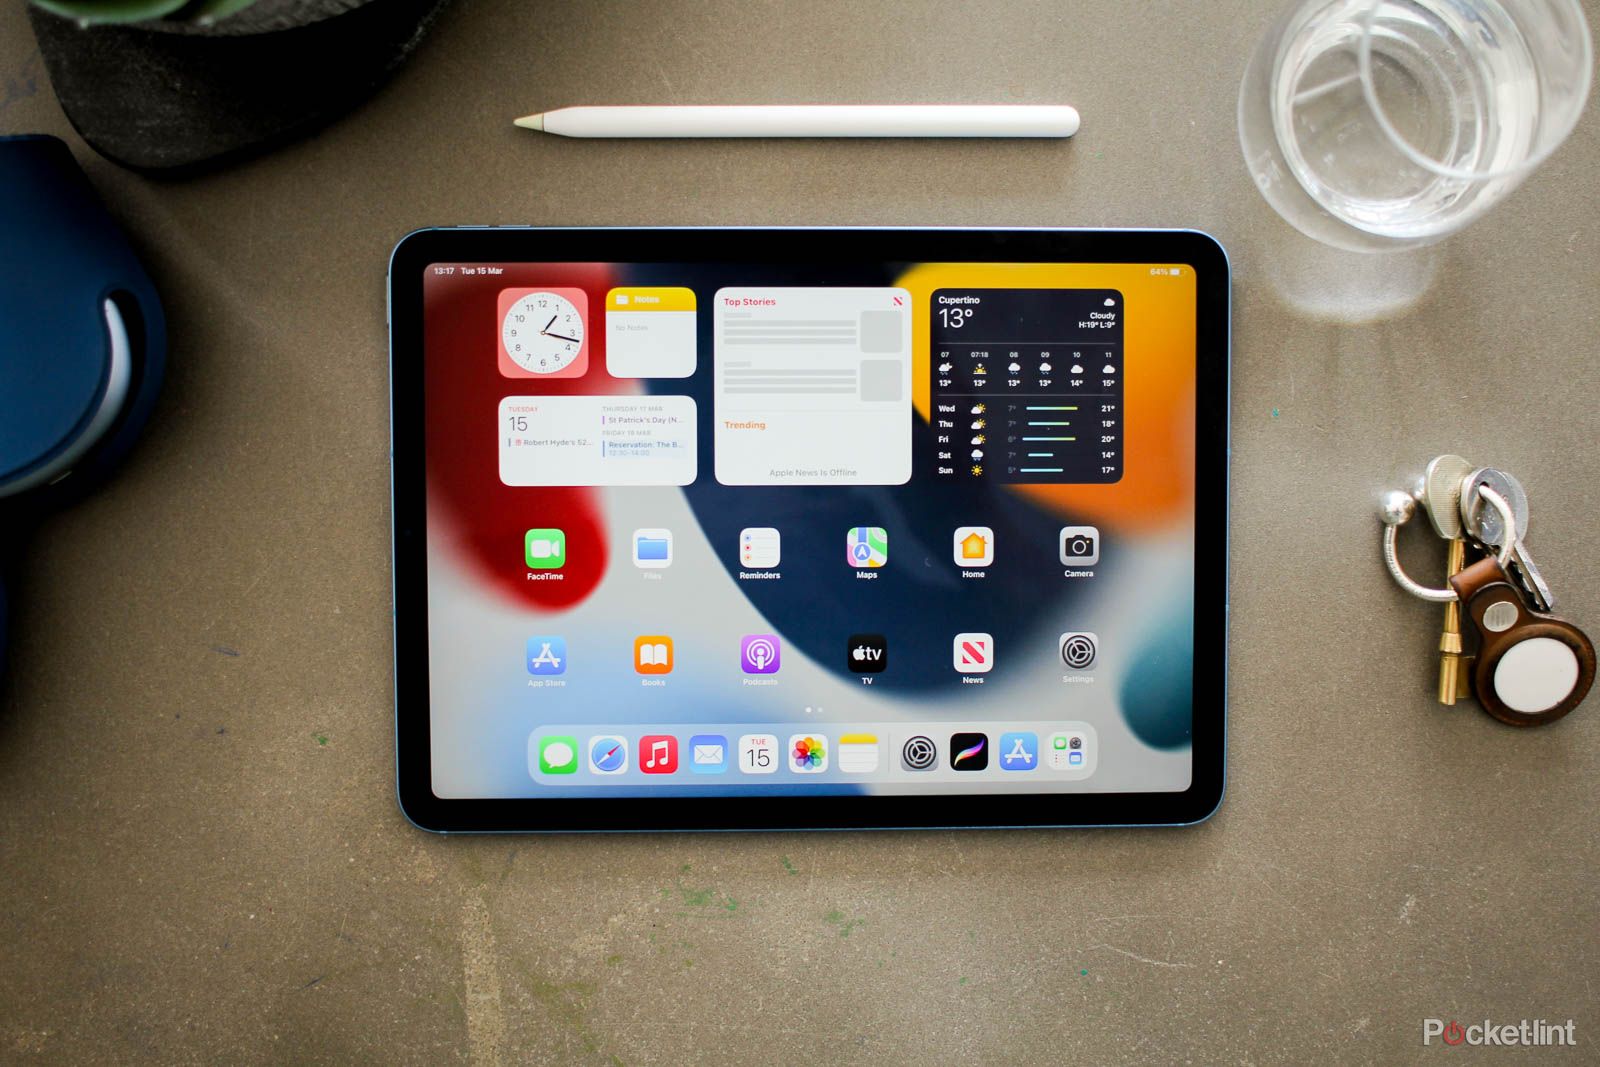 ipad mini on a desk with an Apple Pencil